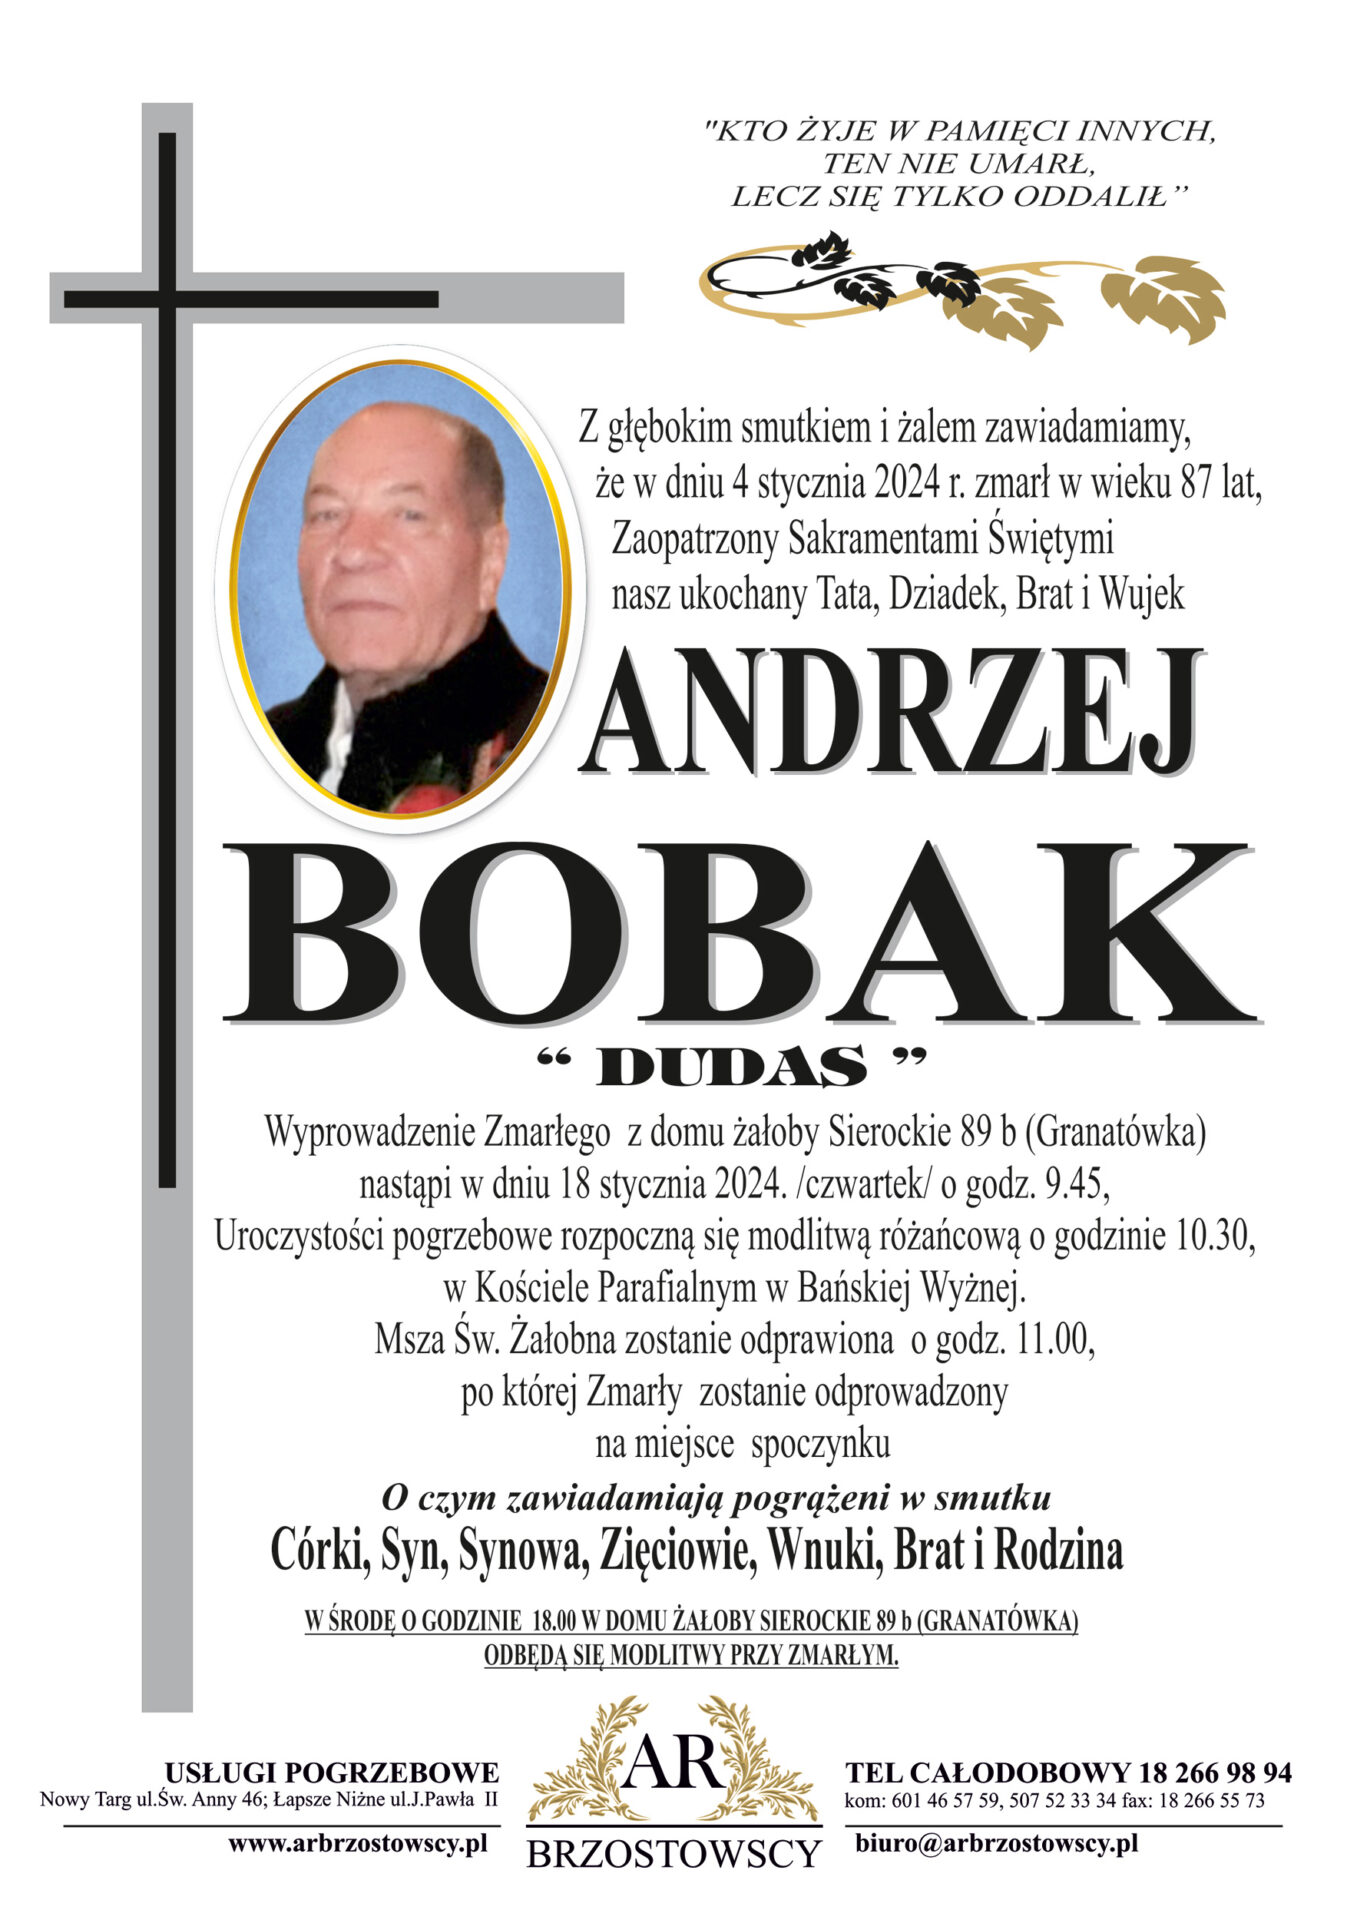 Andrzej Bobak